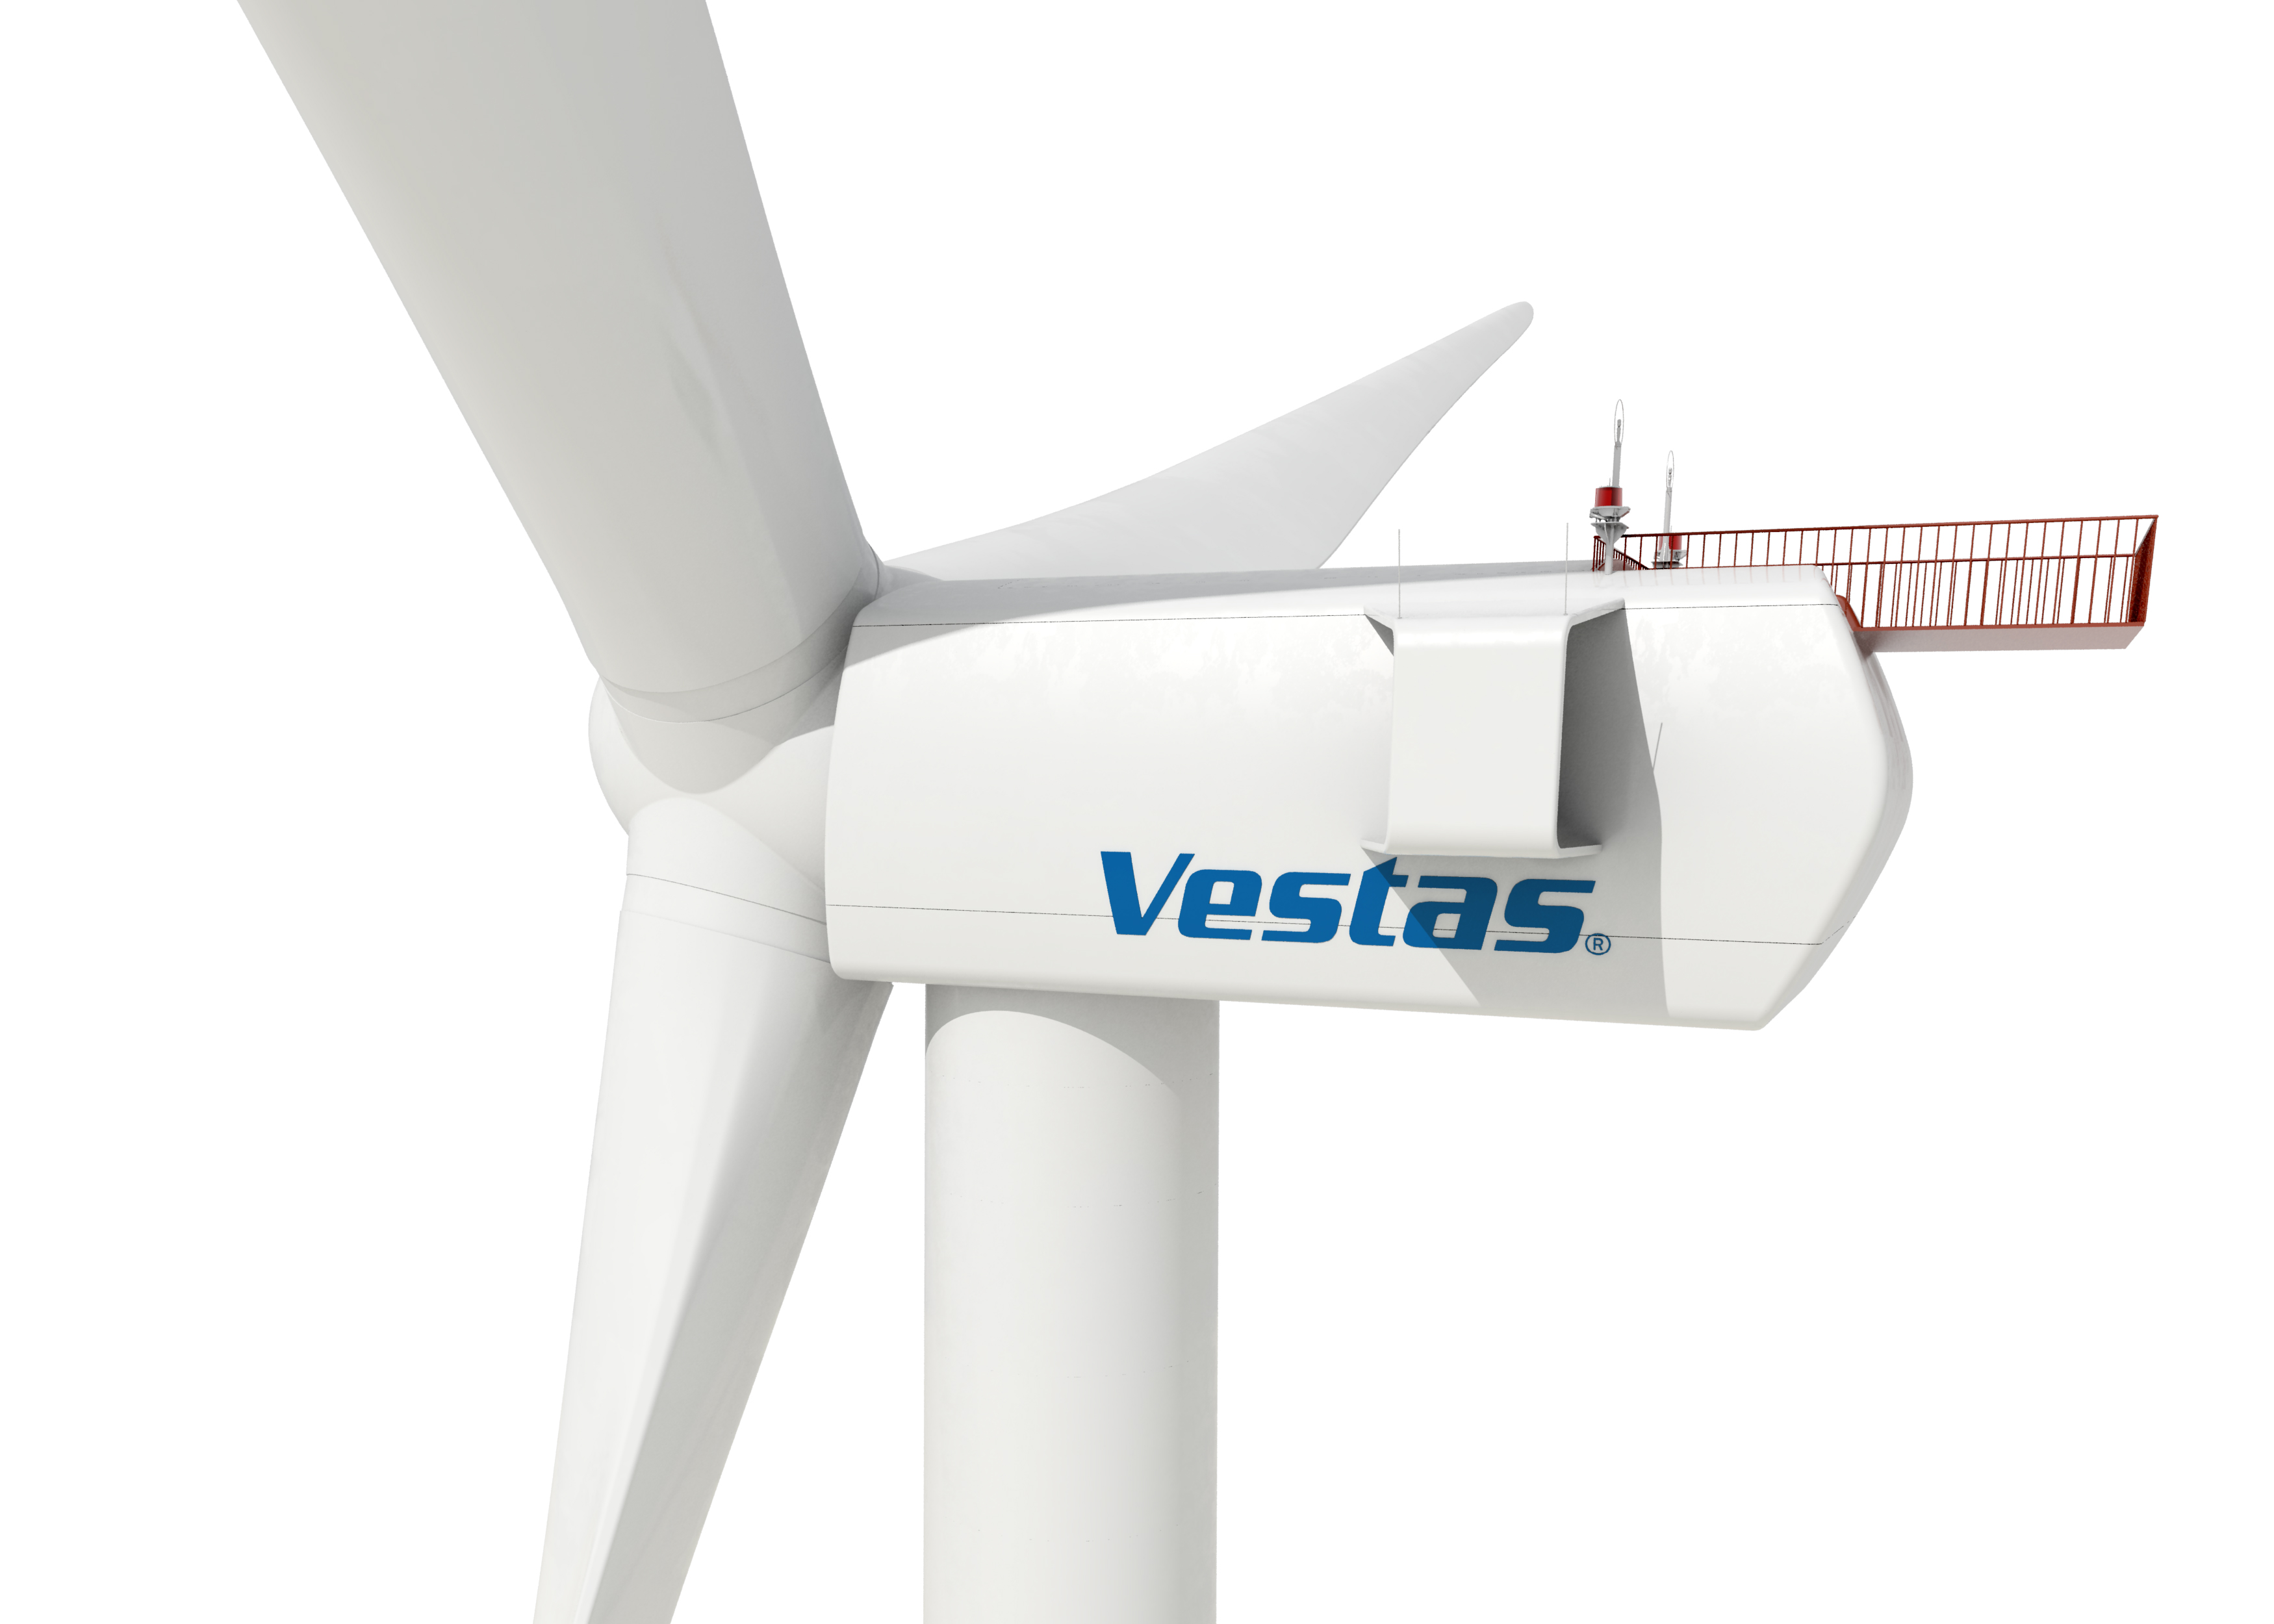 Energía eólica en Vietnam, Vestas suministra aerogeneradores a un parque eólico intermareal de 48 MW